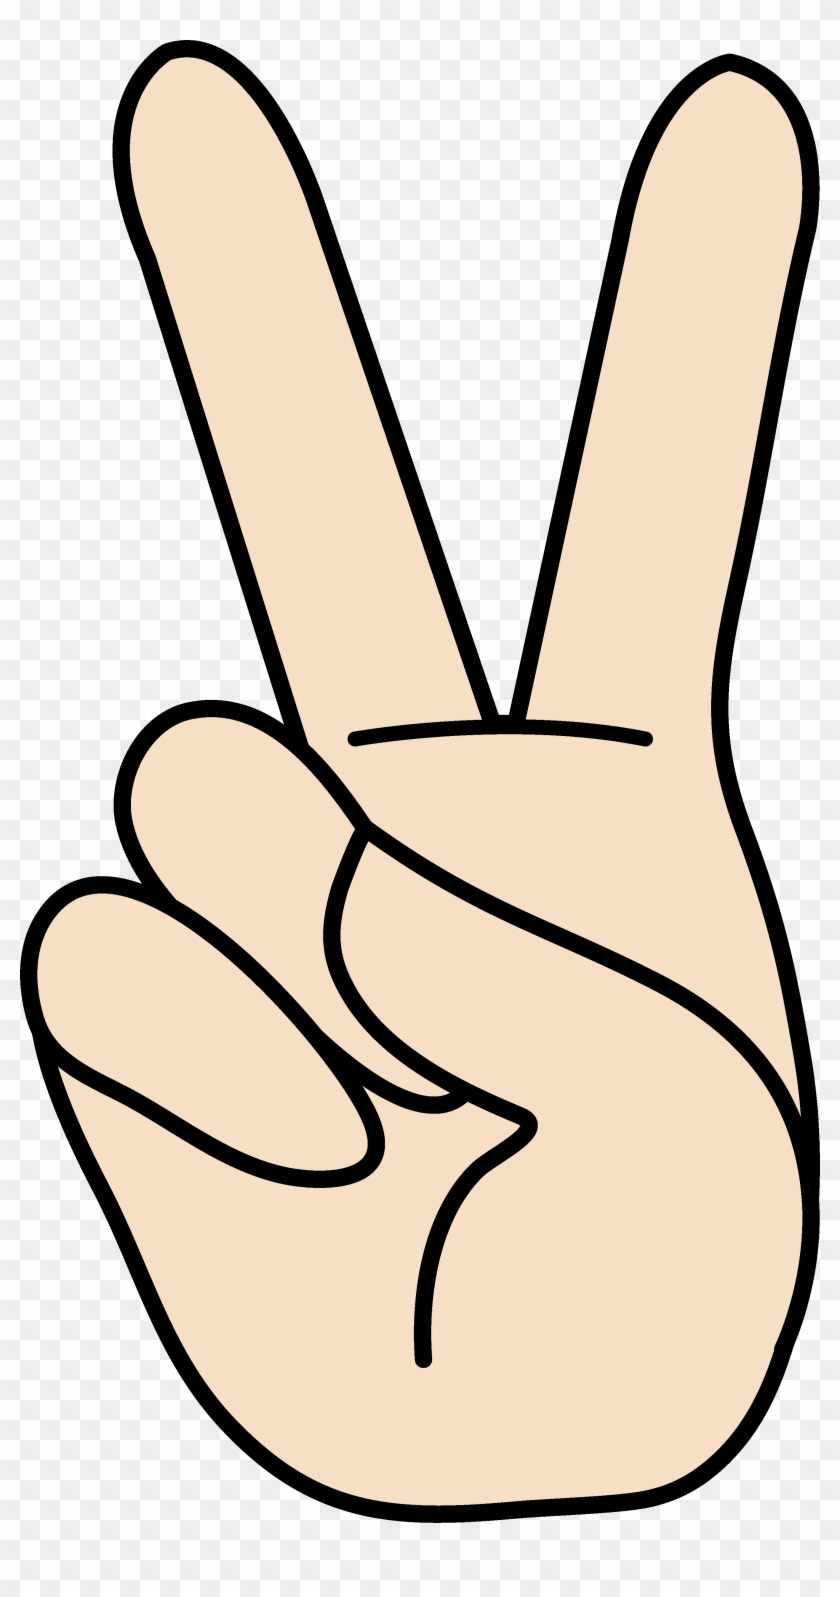 Peace Clipart - Cartoon Hand Peace Sign #384499